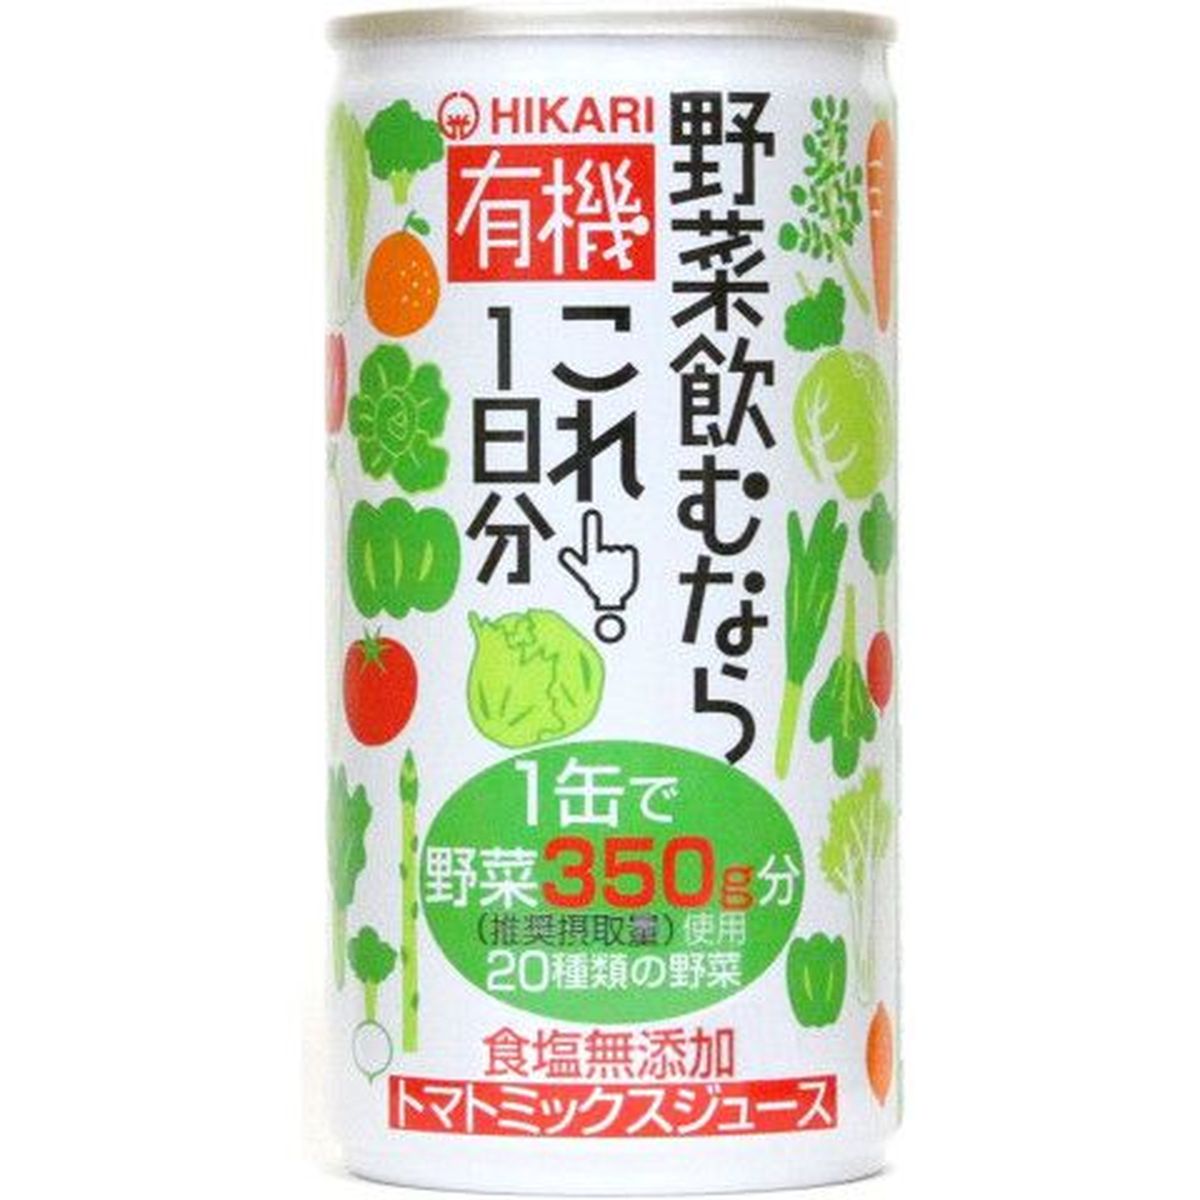 【30個入リ】光食品 有機野菜飲ムナラコレ 1日分 缶 190g